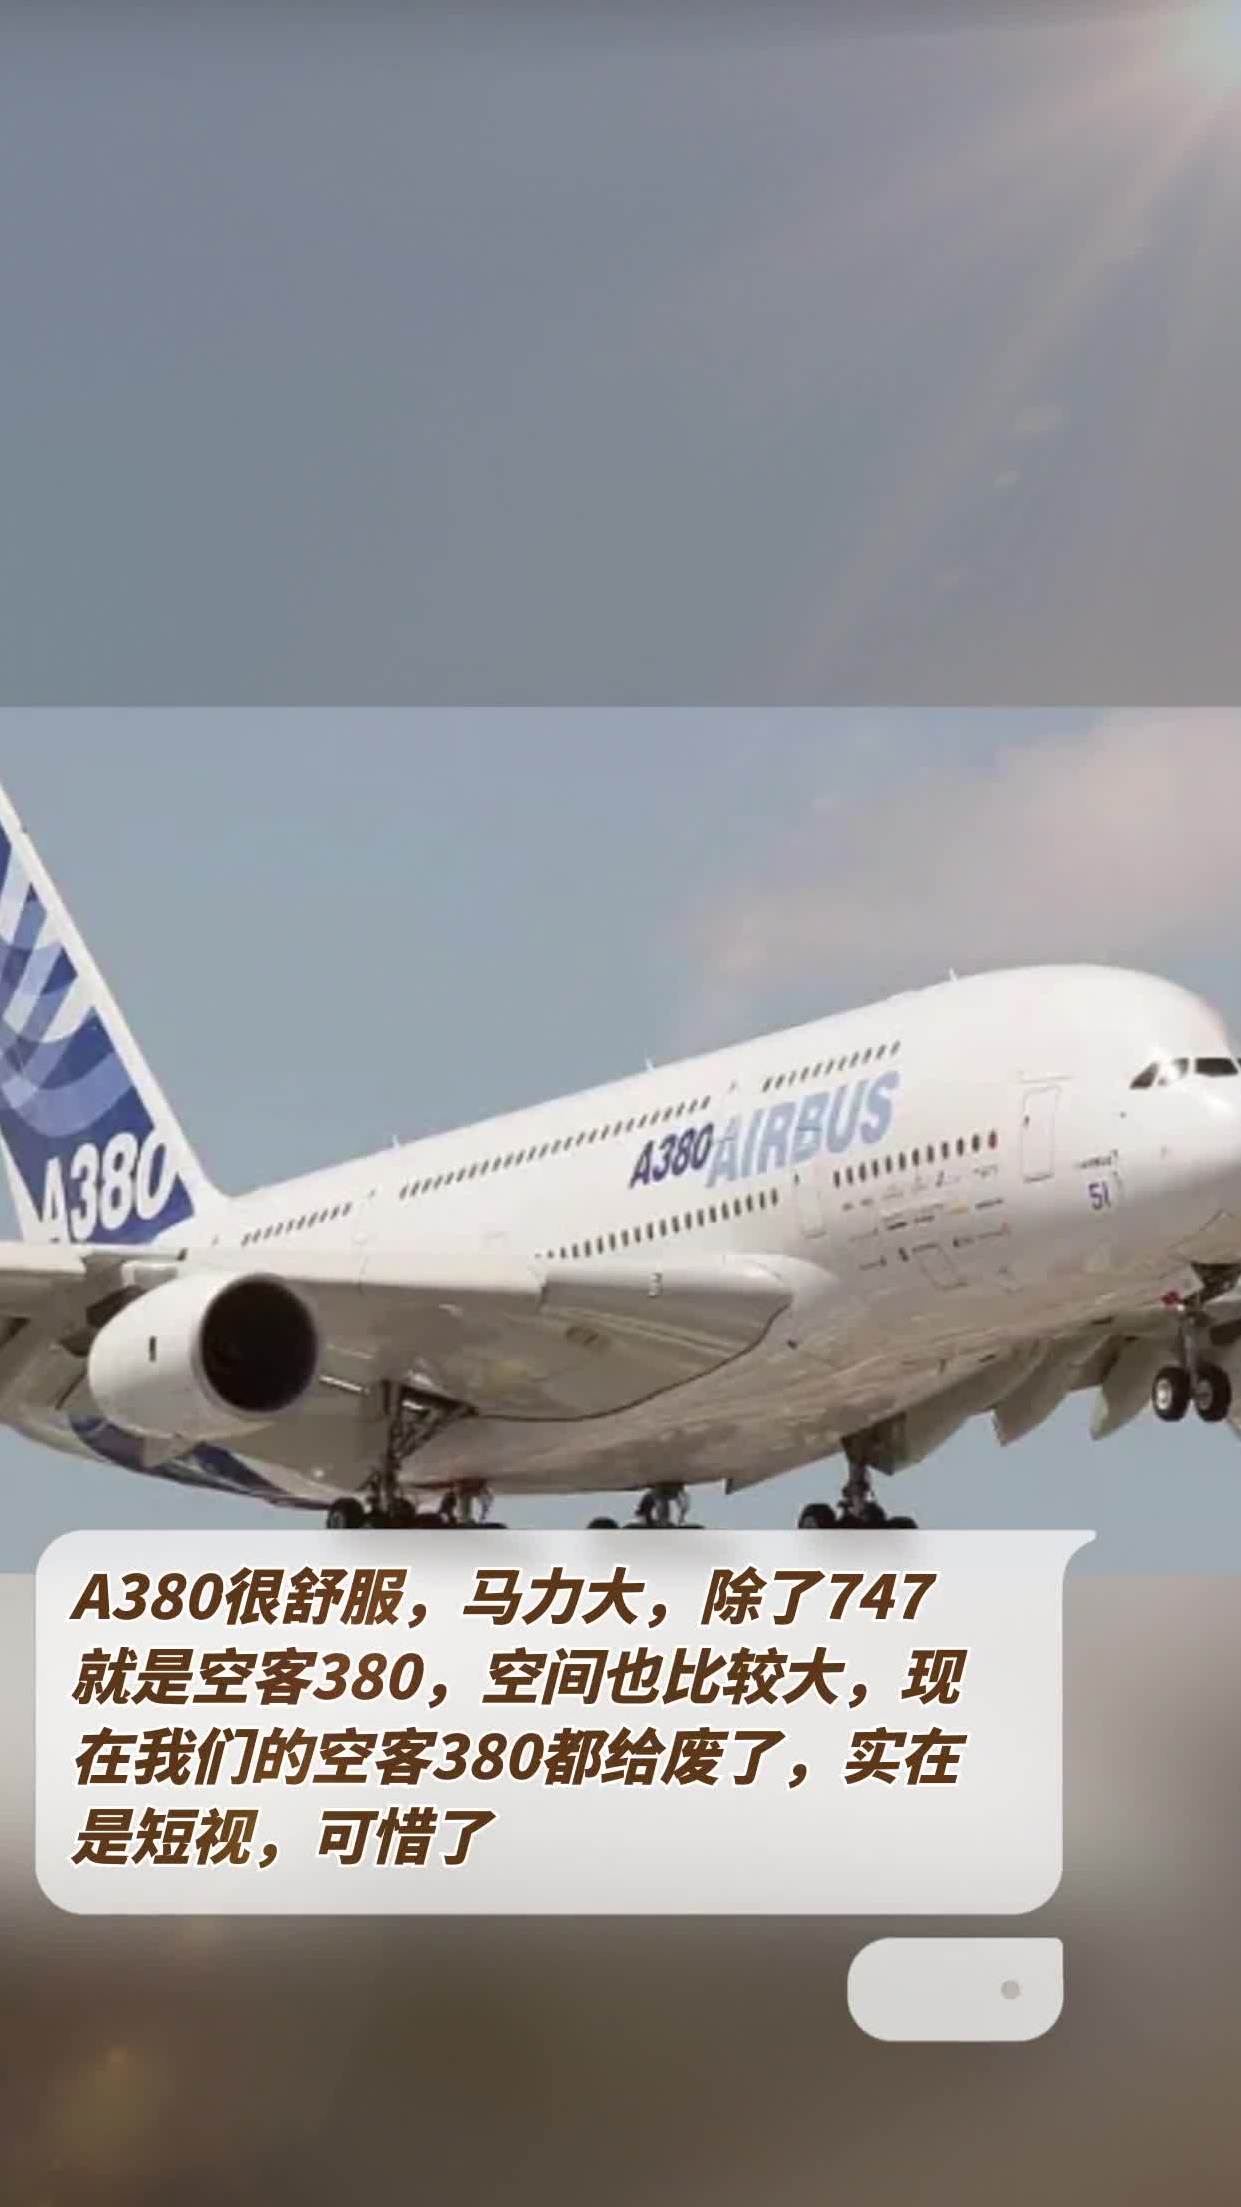 a380很舒服,马力大,除了747就是空客380,空间也比较大,现在我们的空客